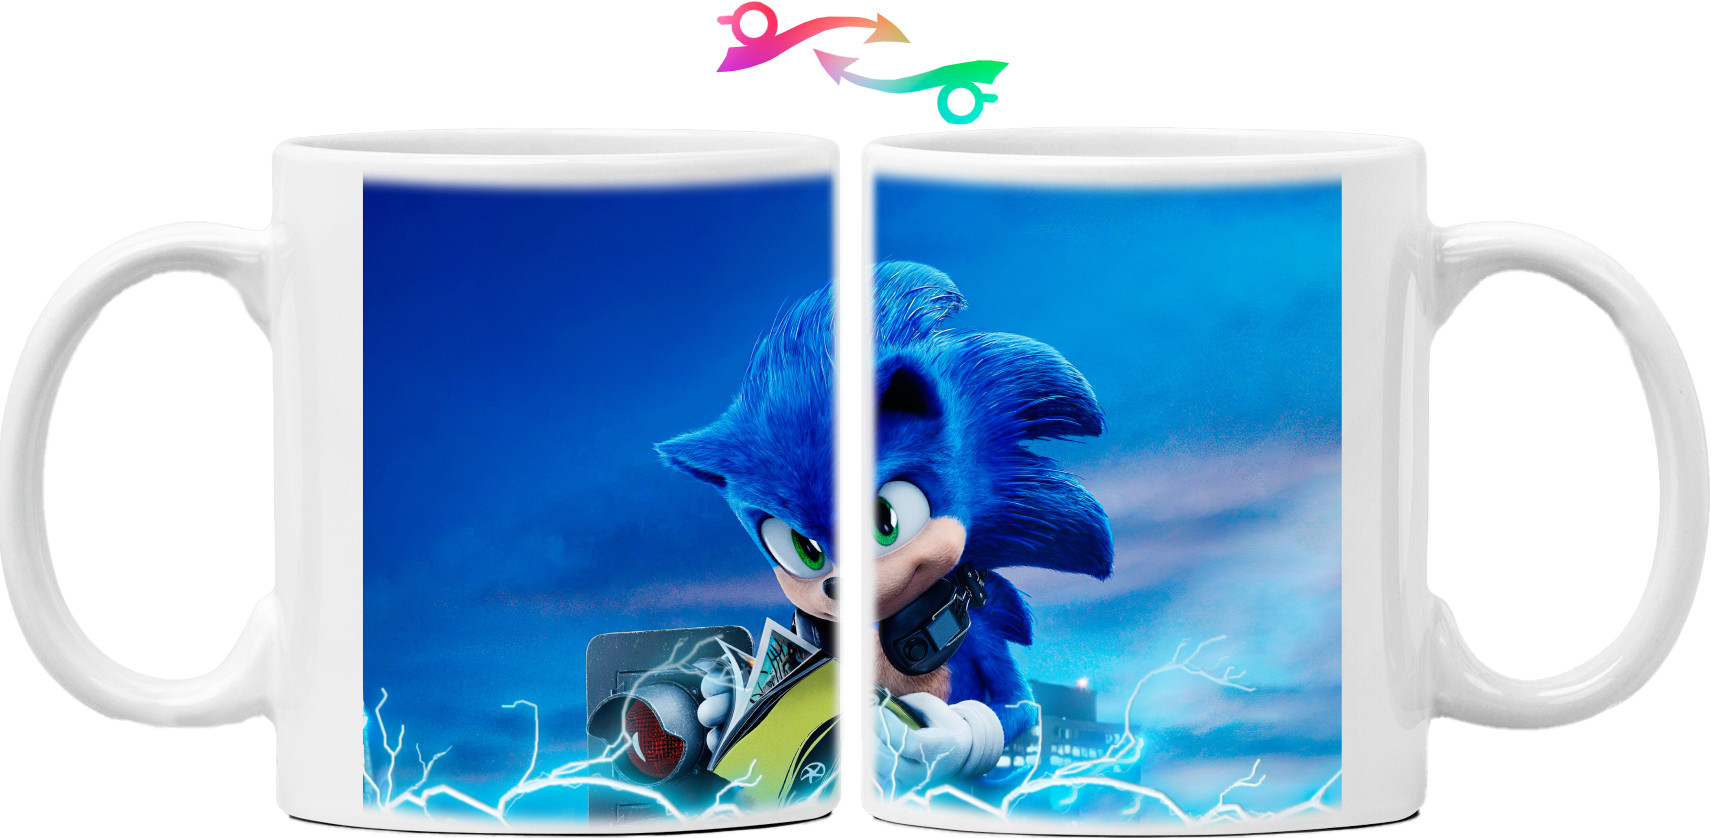 Sonic (29)